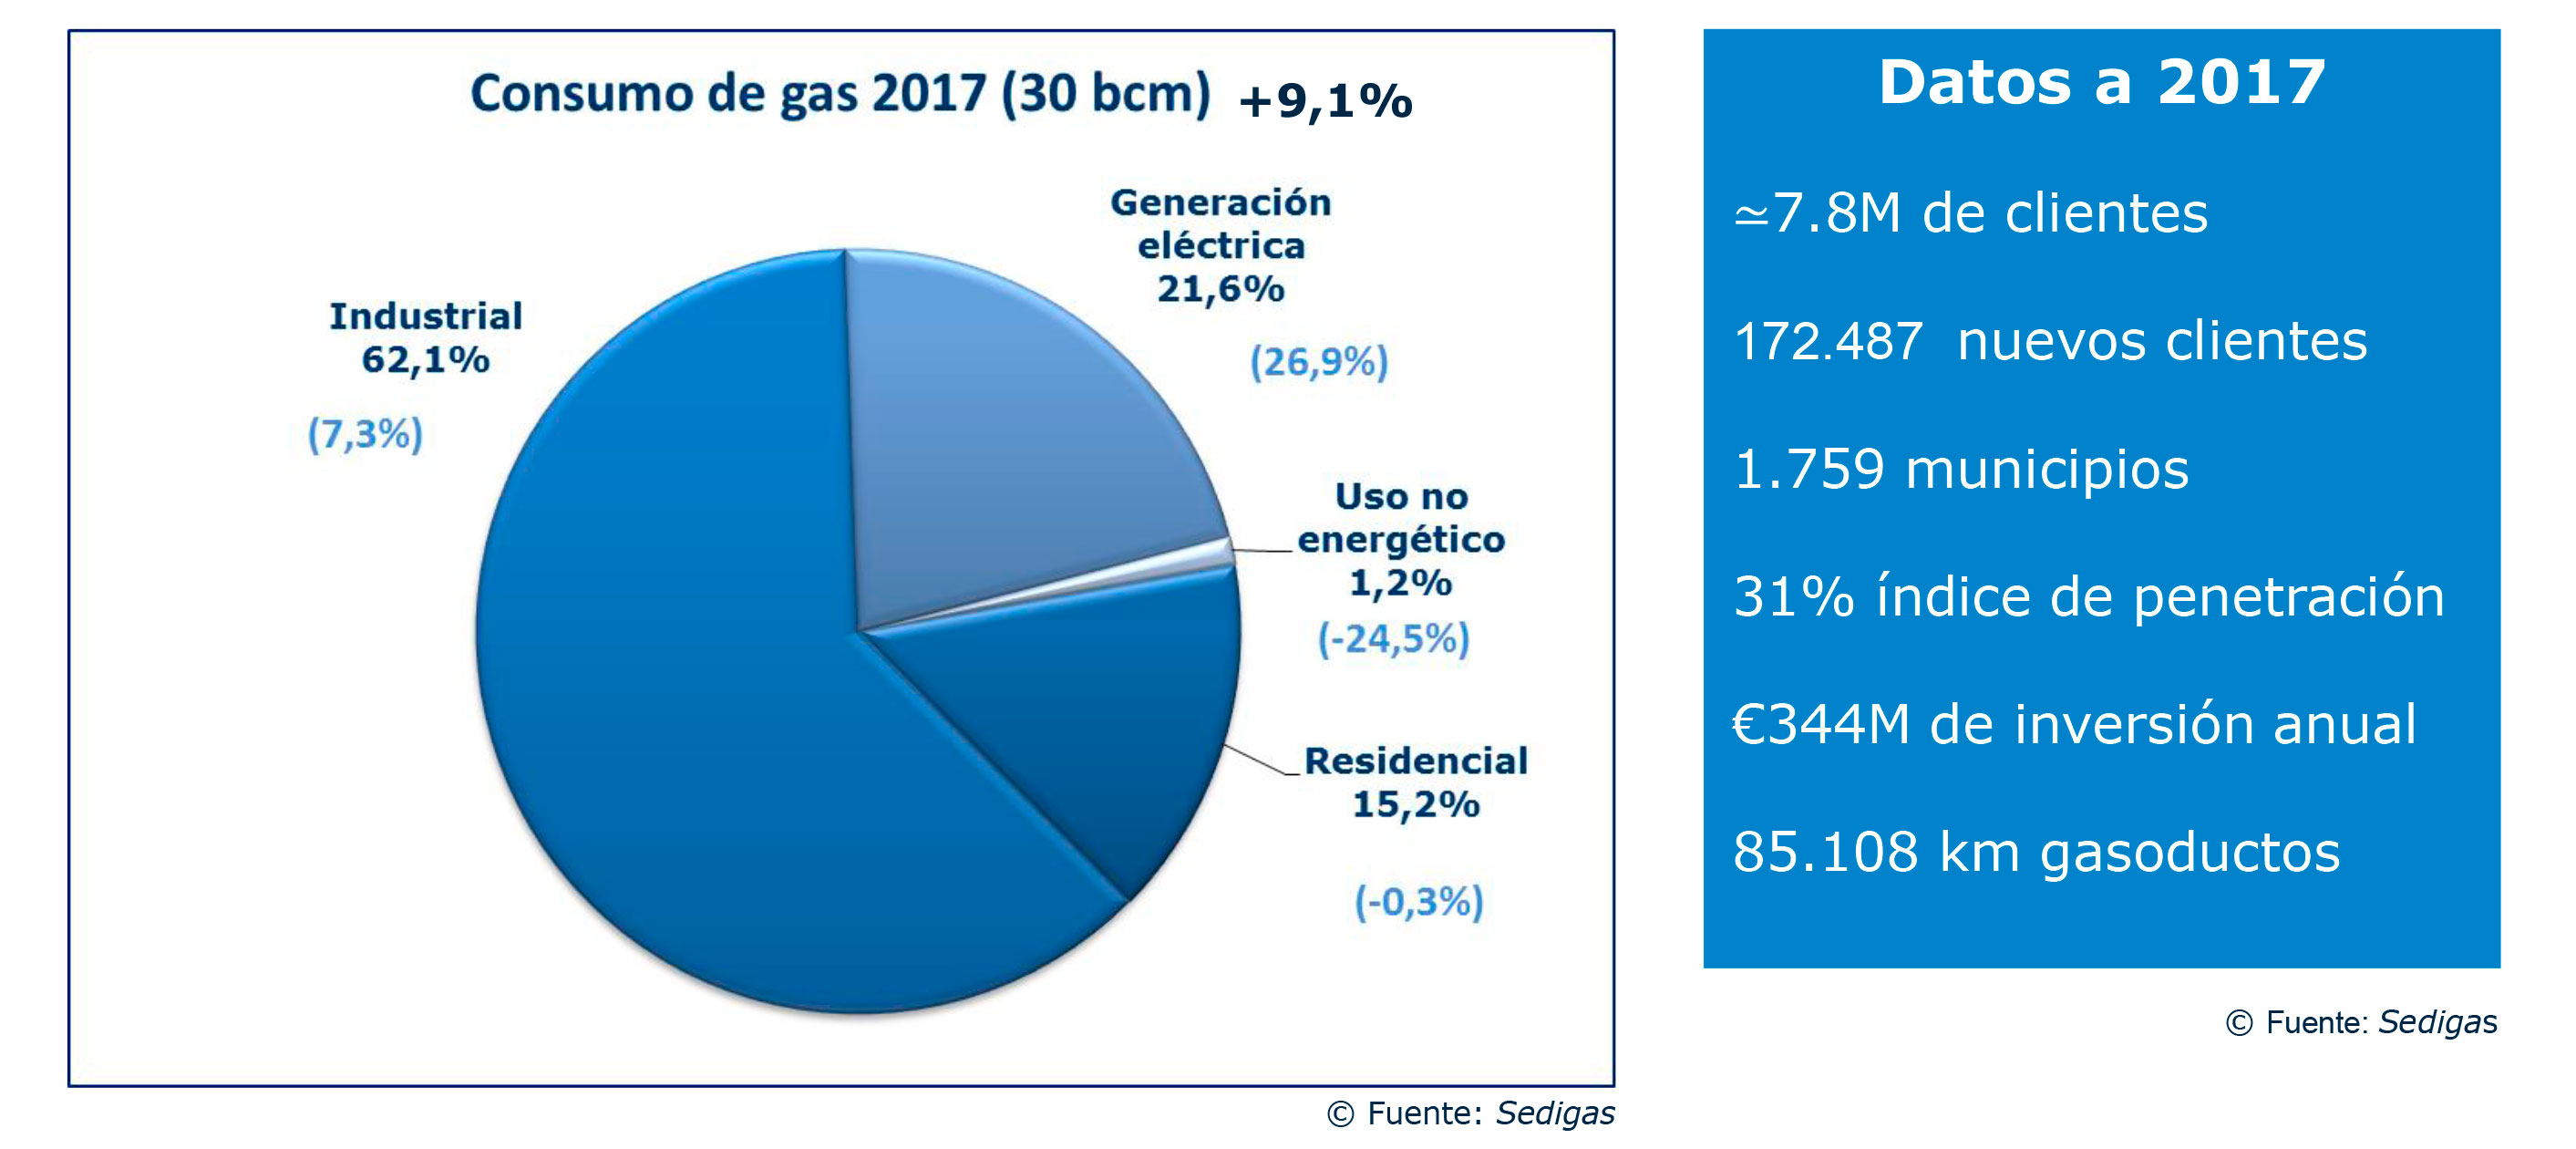 Datos de consumo de gas natural durante 2017, donde se puede comprobar que la industria es el principal consumidor